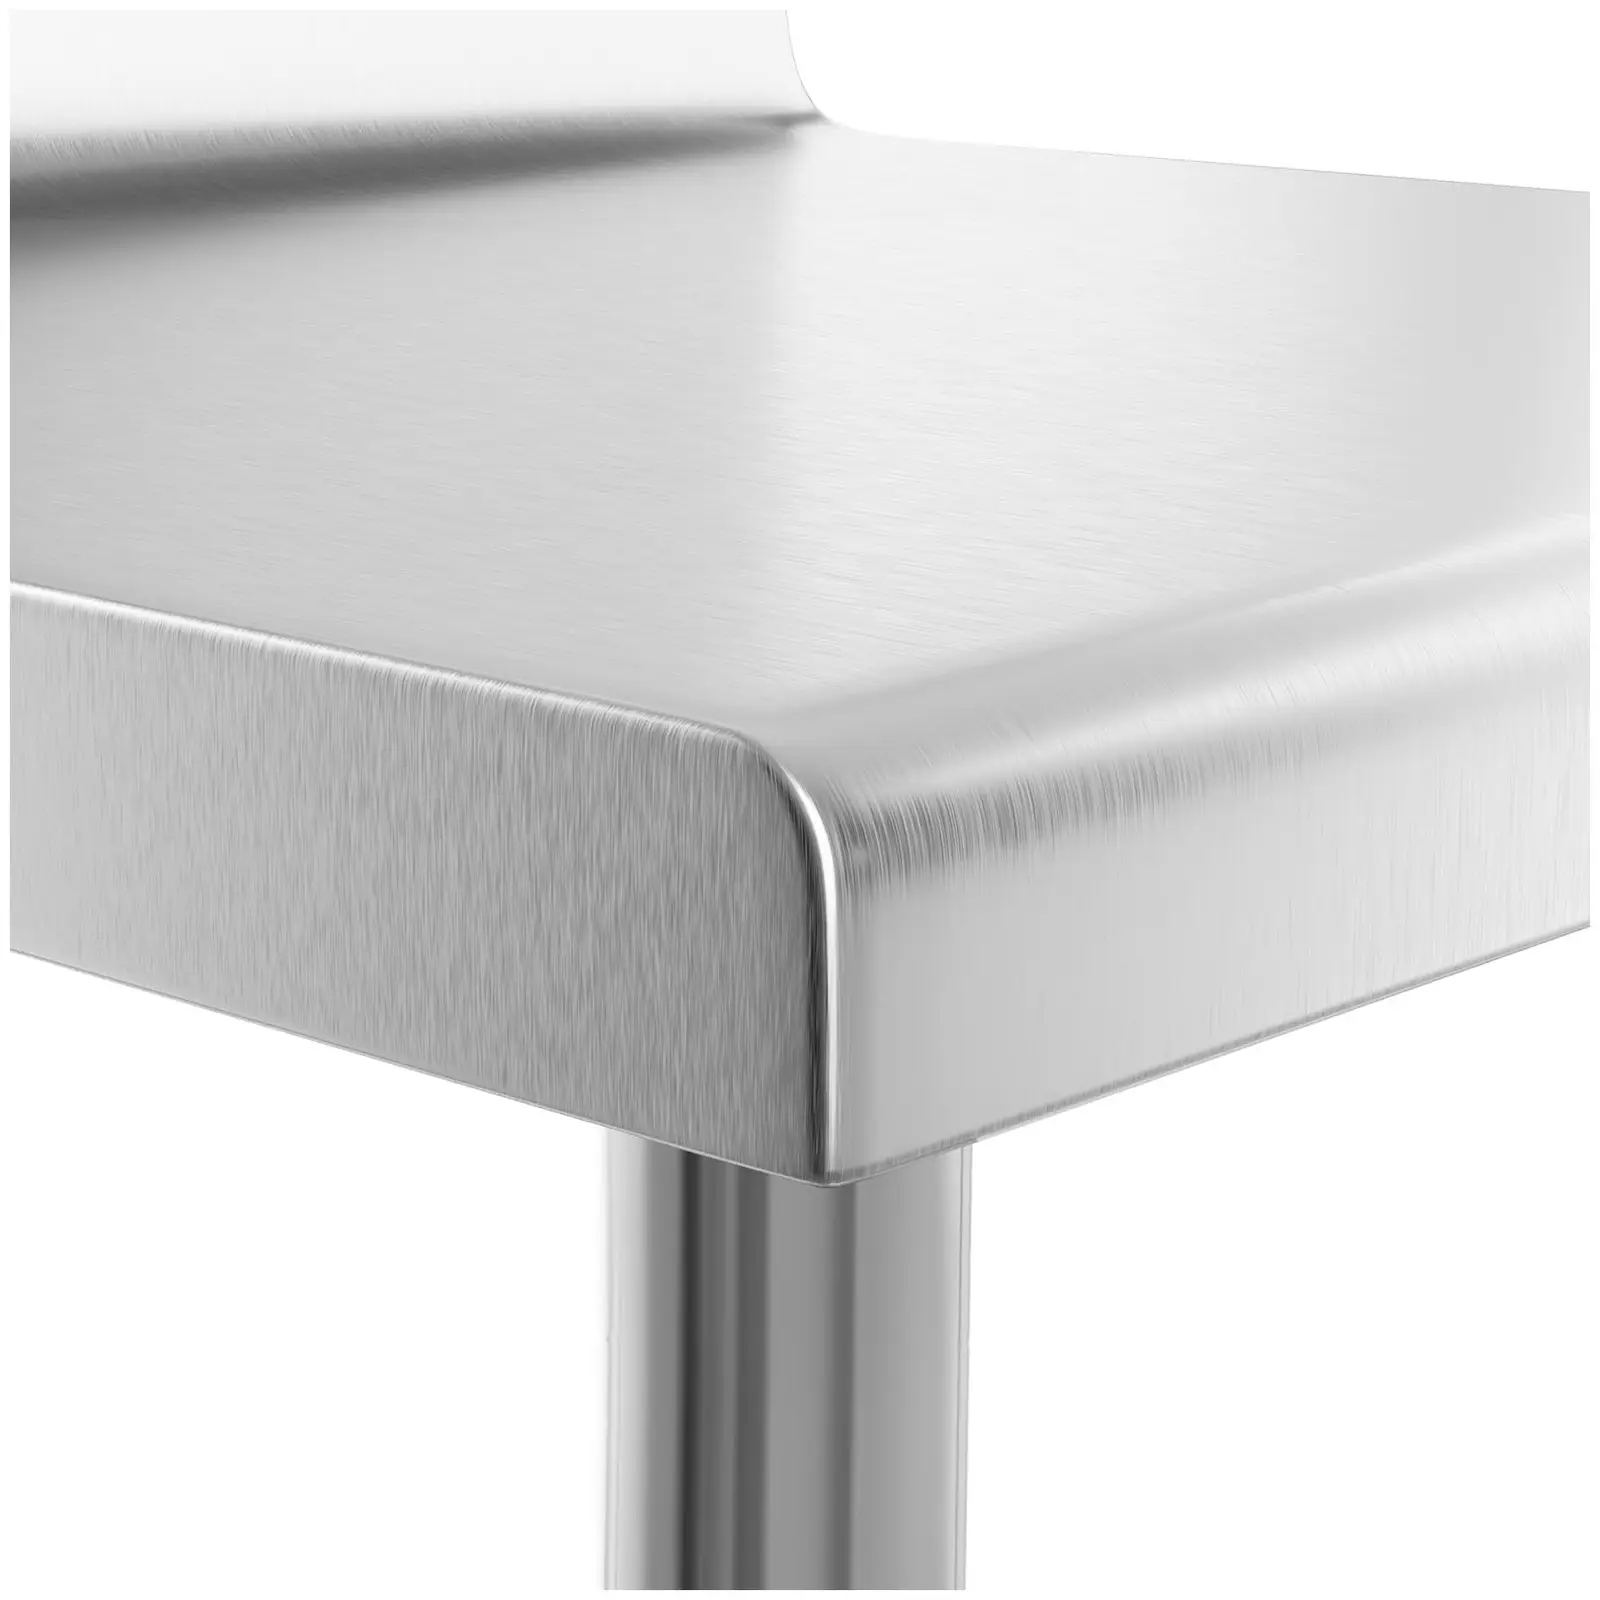 Pracovný stôl z nehrdzavejúcej ocele - 90 x 60 cm - lem - nosnosť 210 kg